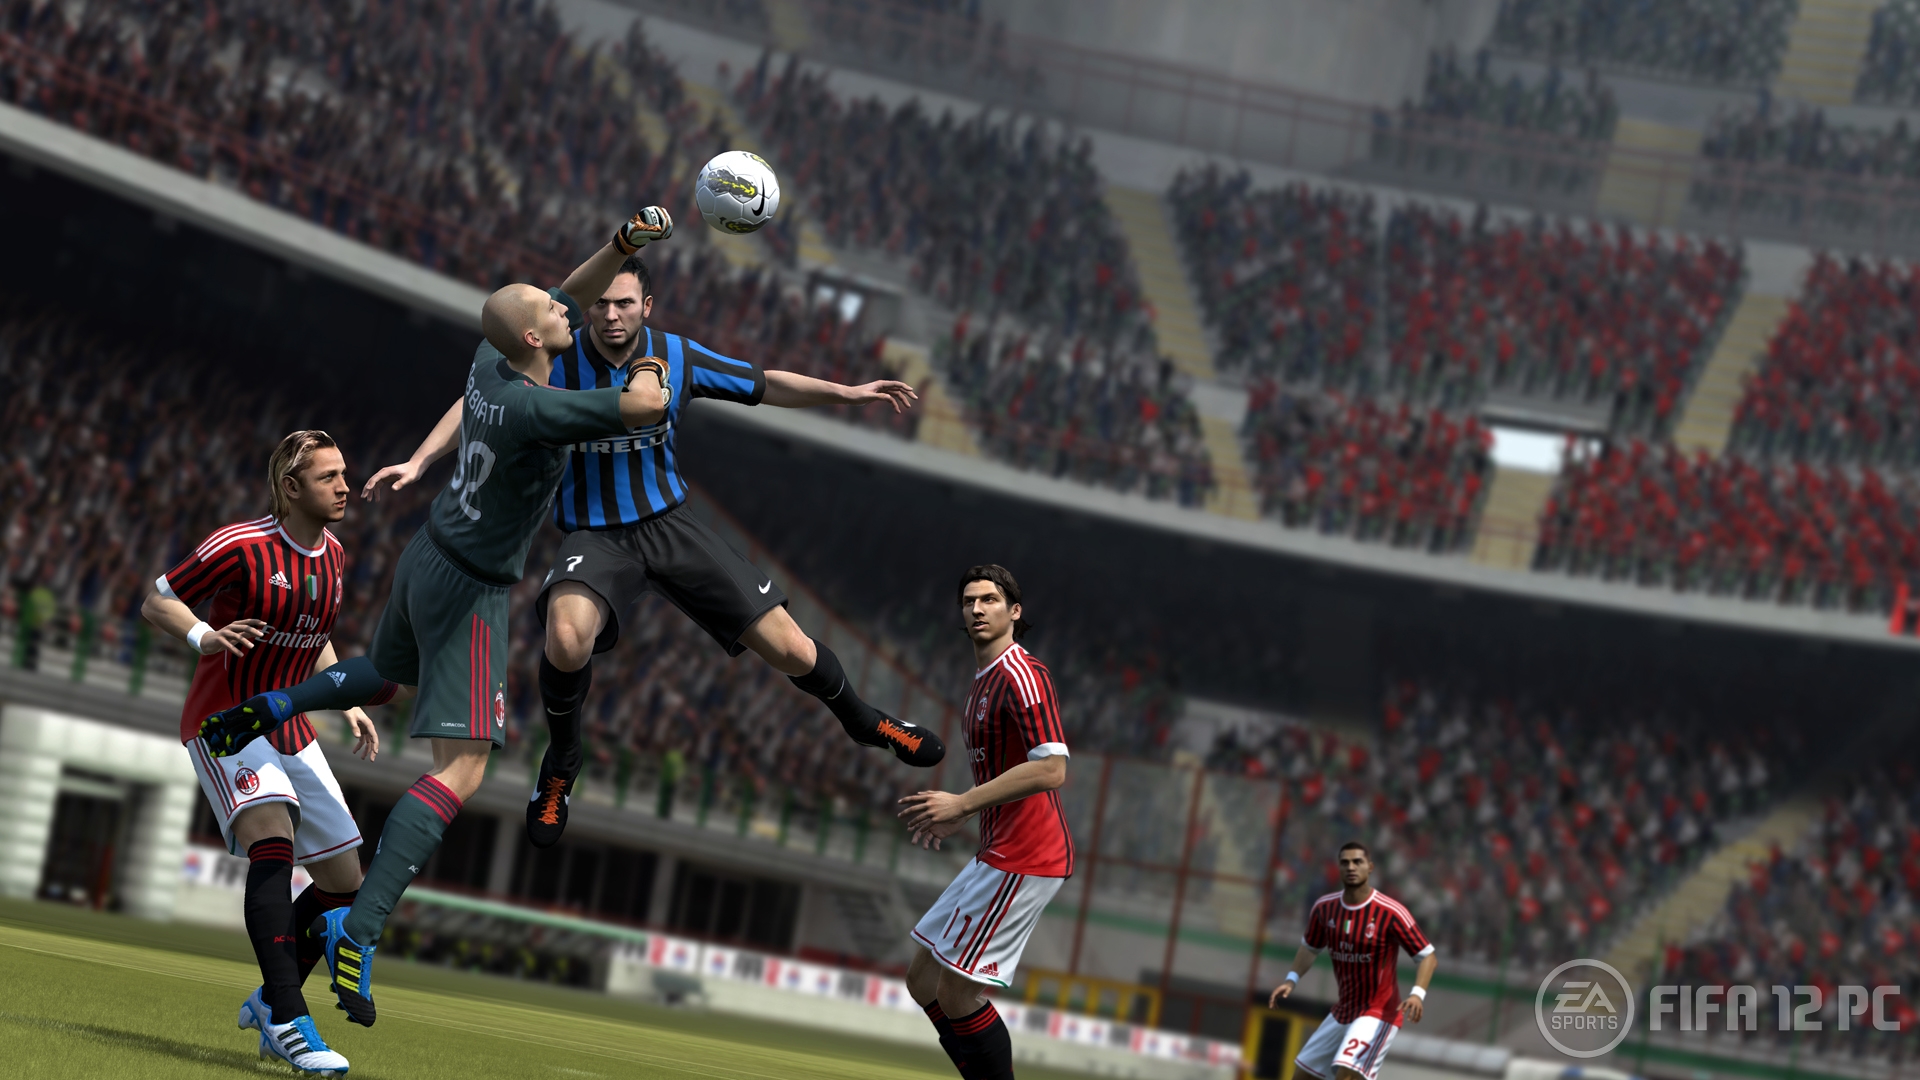 FIFA12_PC_Milan_goalie_fist_clear_WM